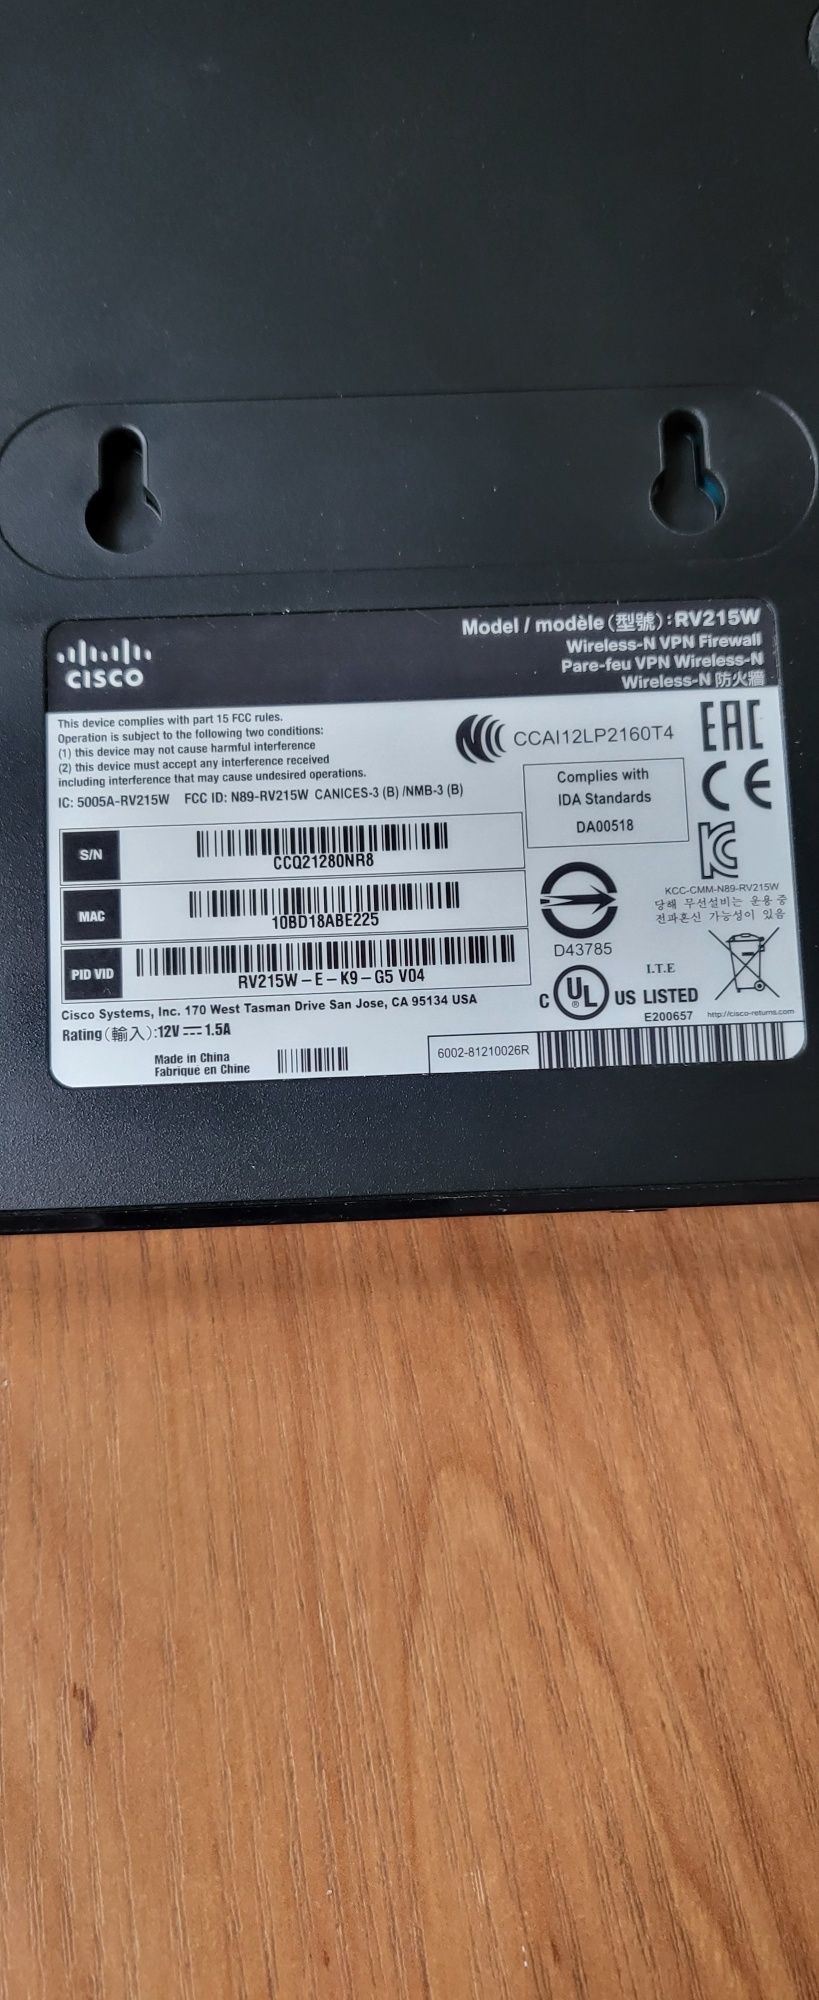 Cisco Router RV 215 W Wireles VPN Firewall 3G 4G